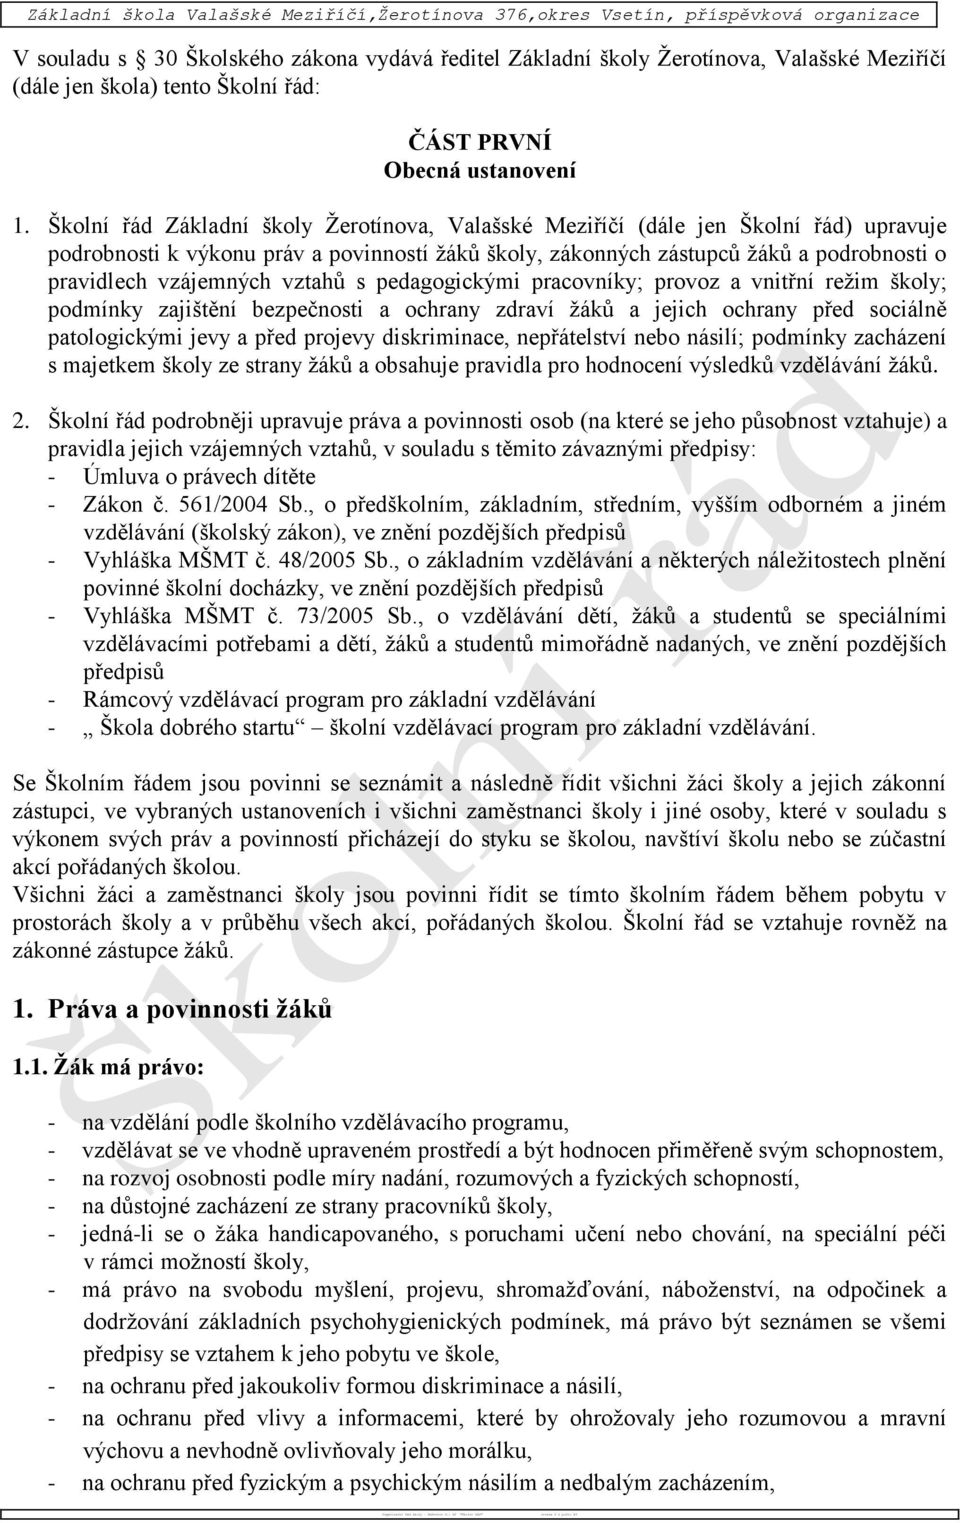 Školní řád Základní školy Žerotínova, Valašské Meziříčí (dále jen Školní řád) upravuje podrobnosti k výkonu práv a povinností žáků školy, zákonných zástupců žáků a podrobnosti o pravidlech vzájemných